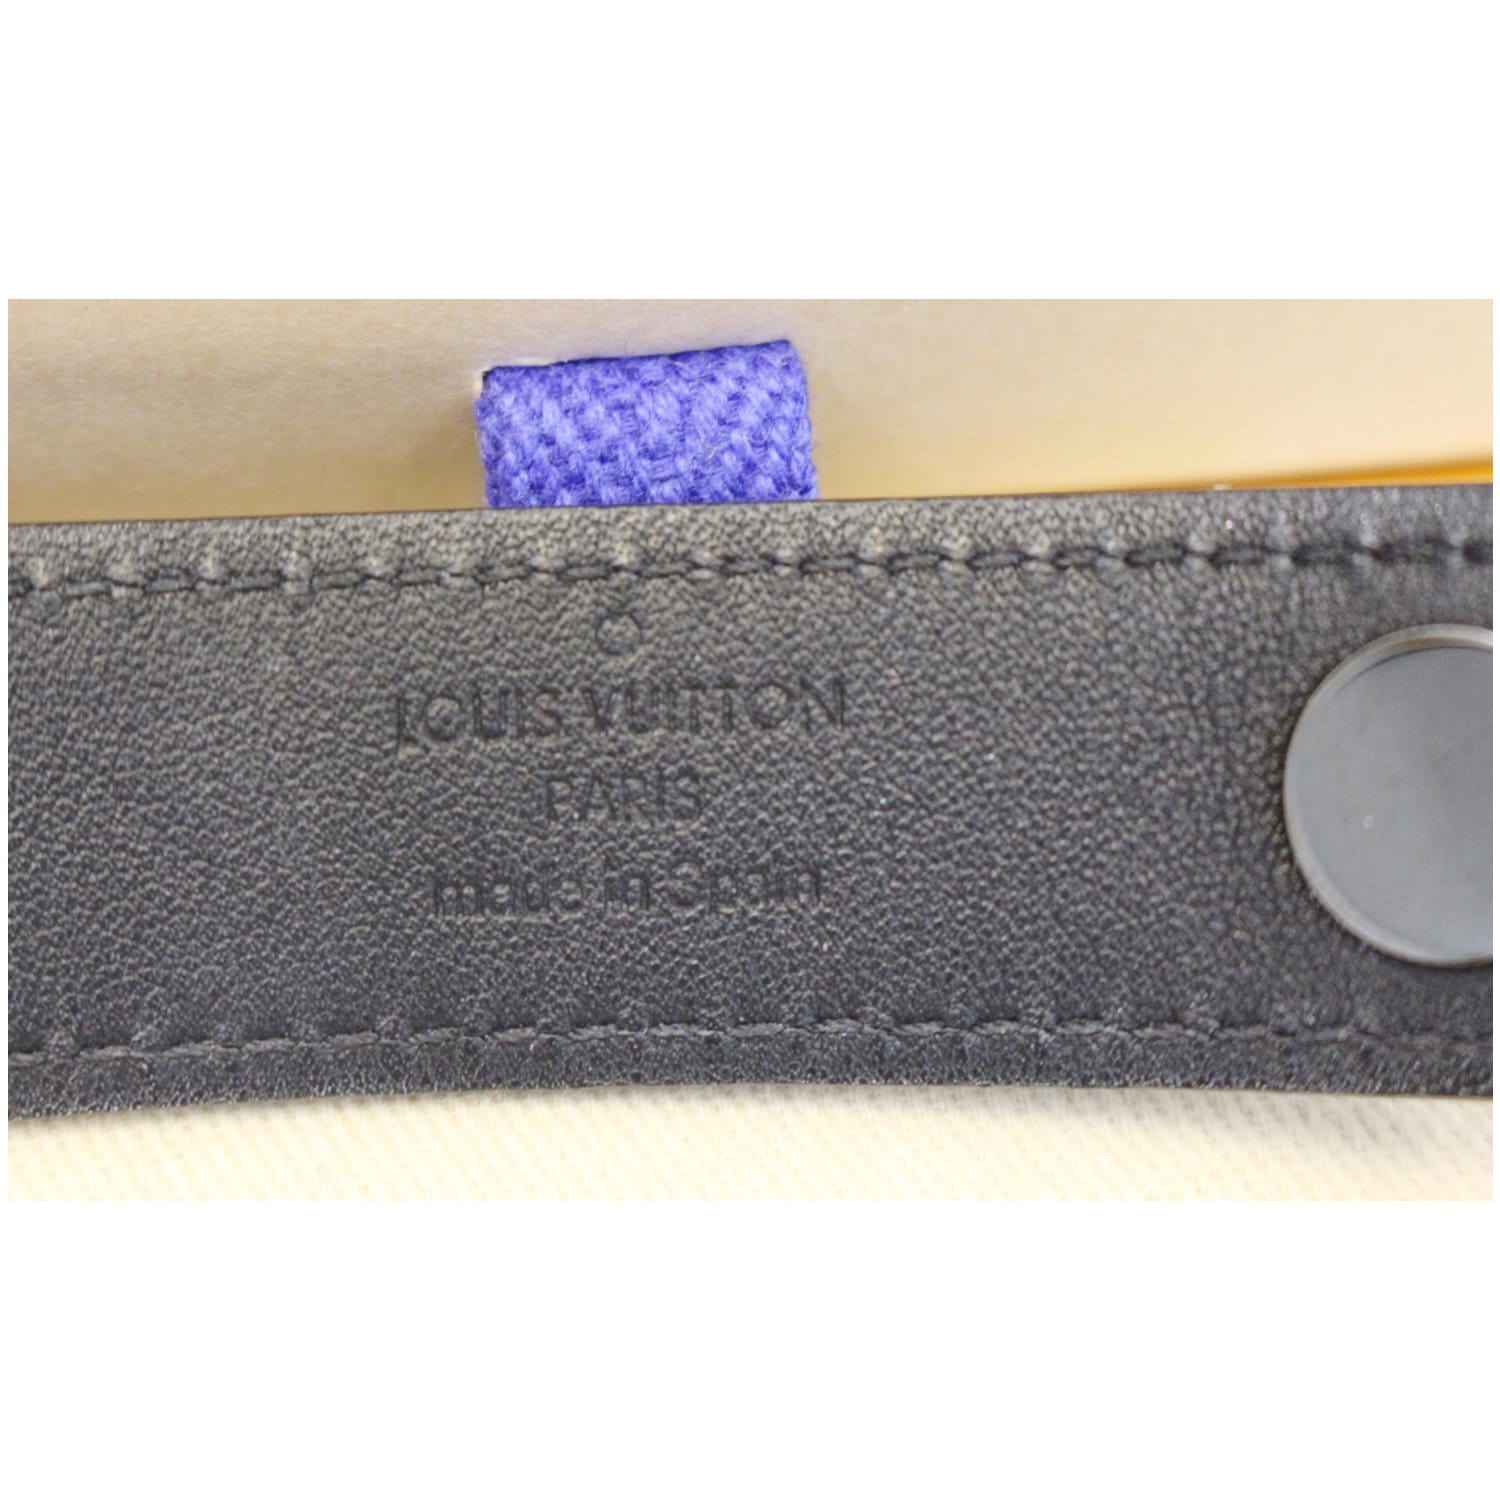 Authentic Louis Vuitton Monogram Eclipse Hockenheim Bracelet Size